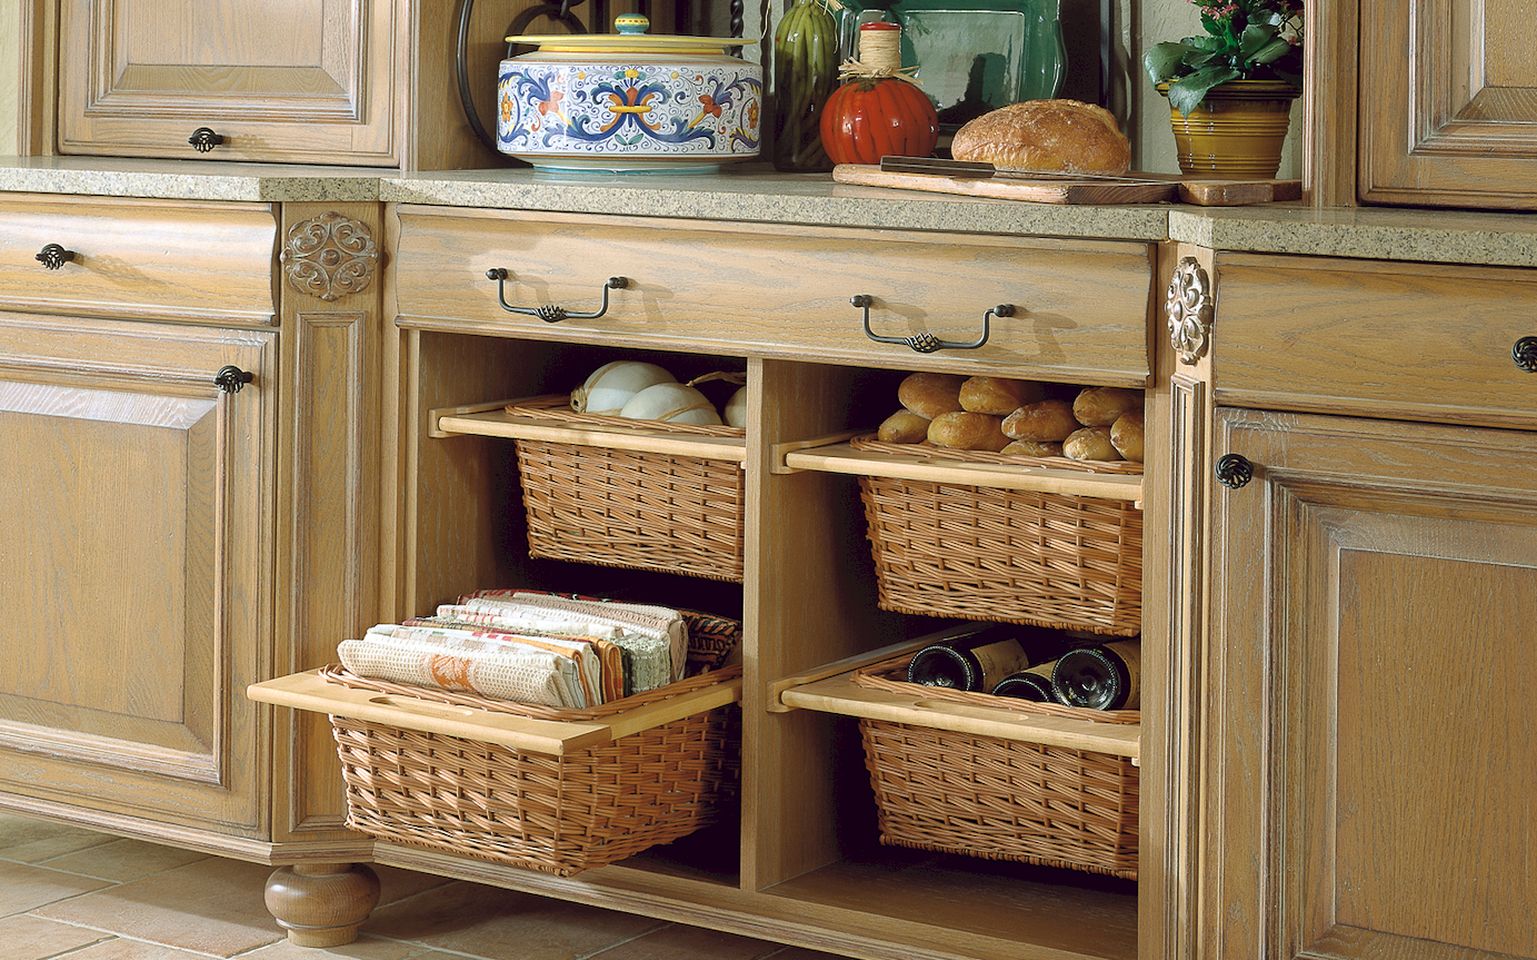 Kitchen Storage Baskets photo - 3